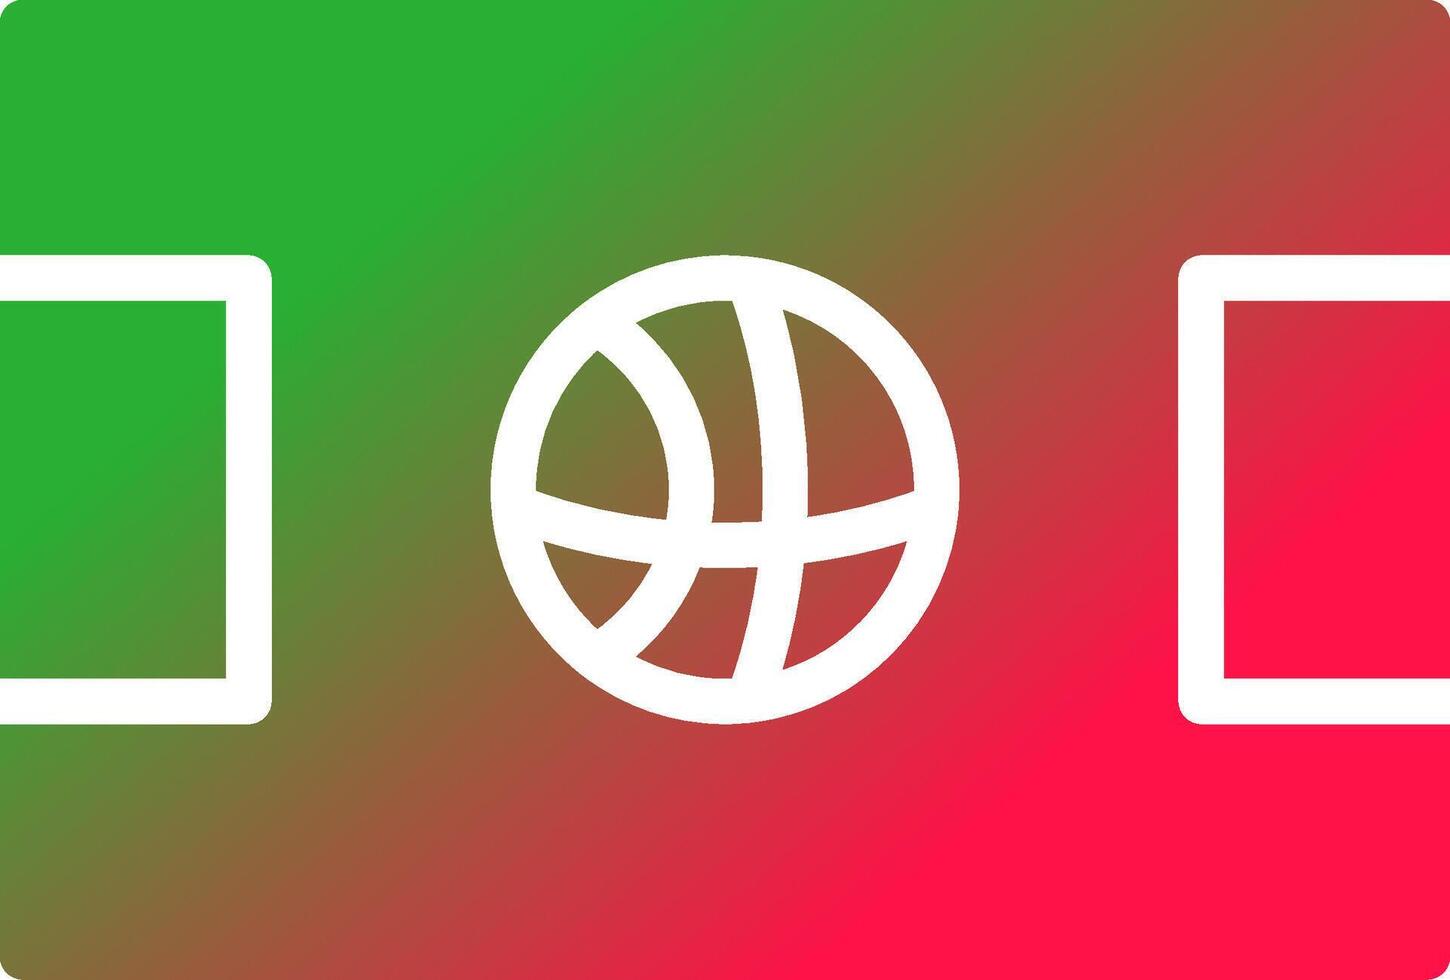 Basketballplatz kreatives Icon-Design vektor